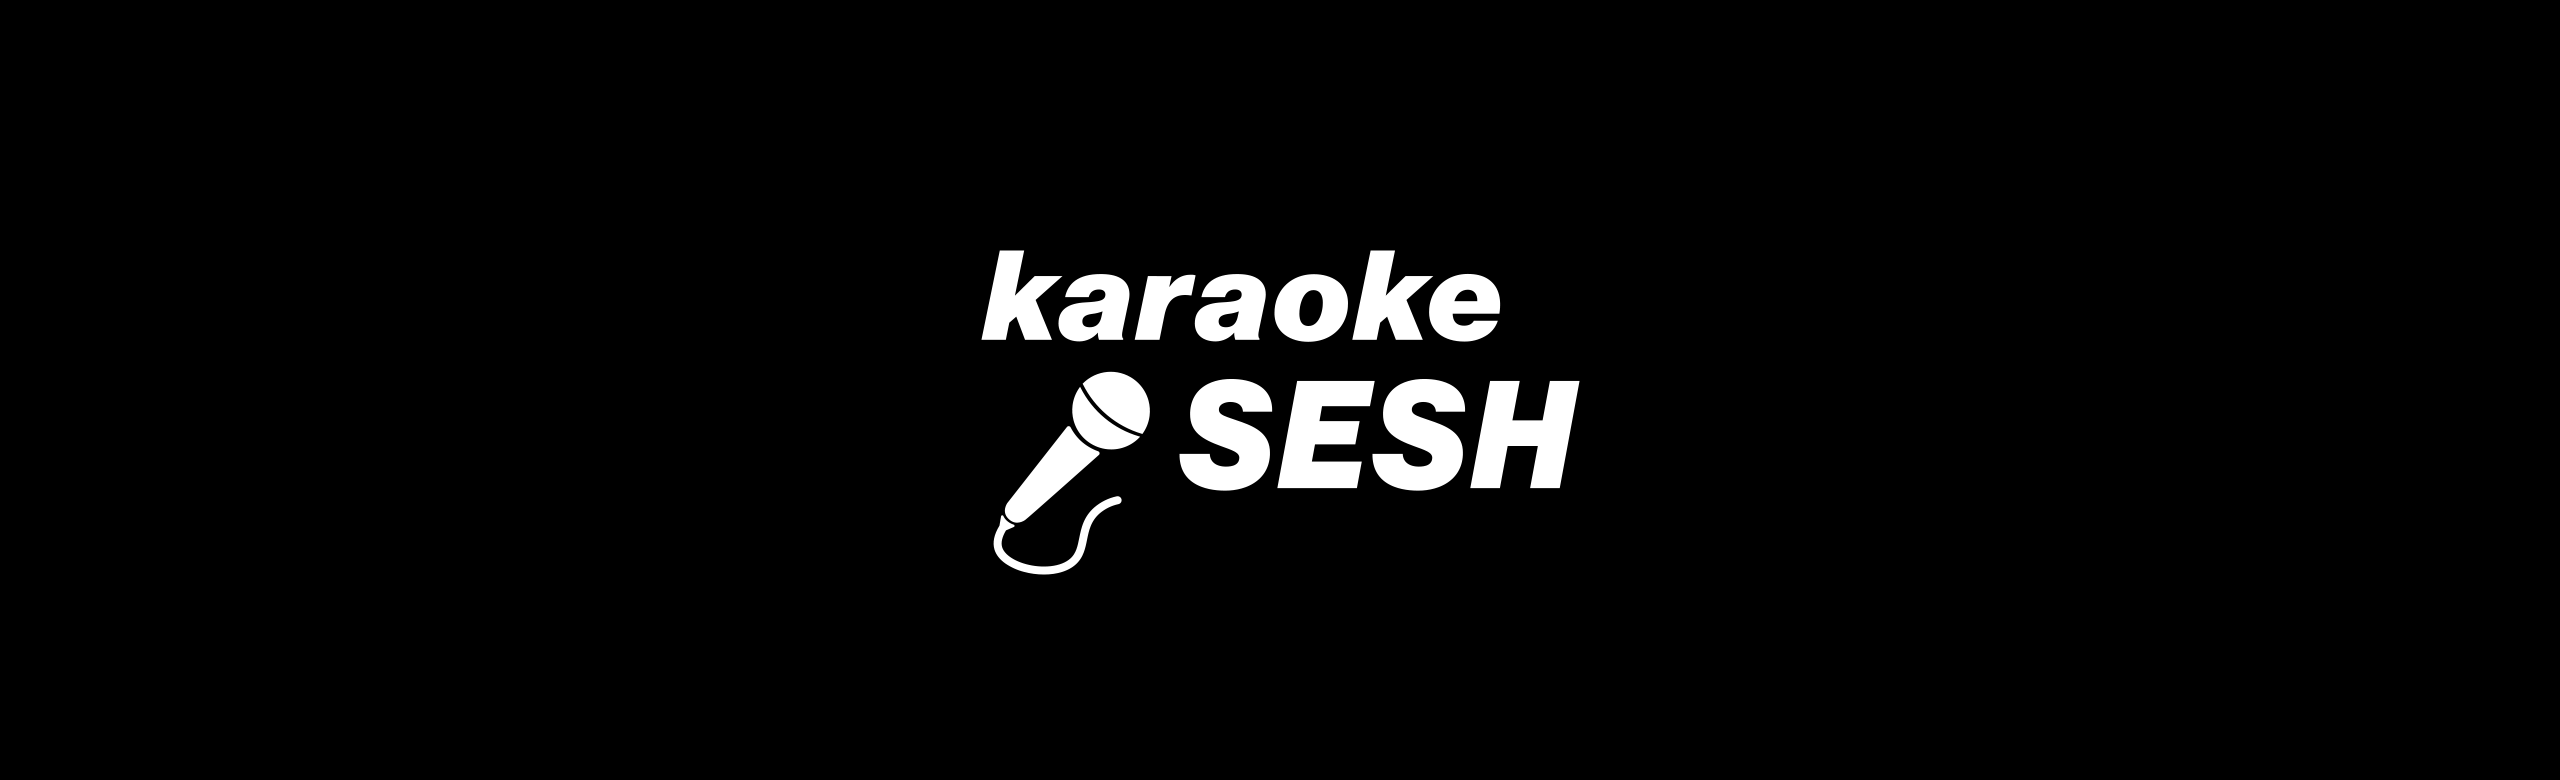 sing2music - karaoke sesh